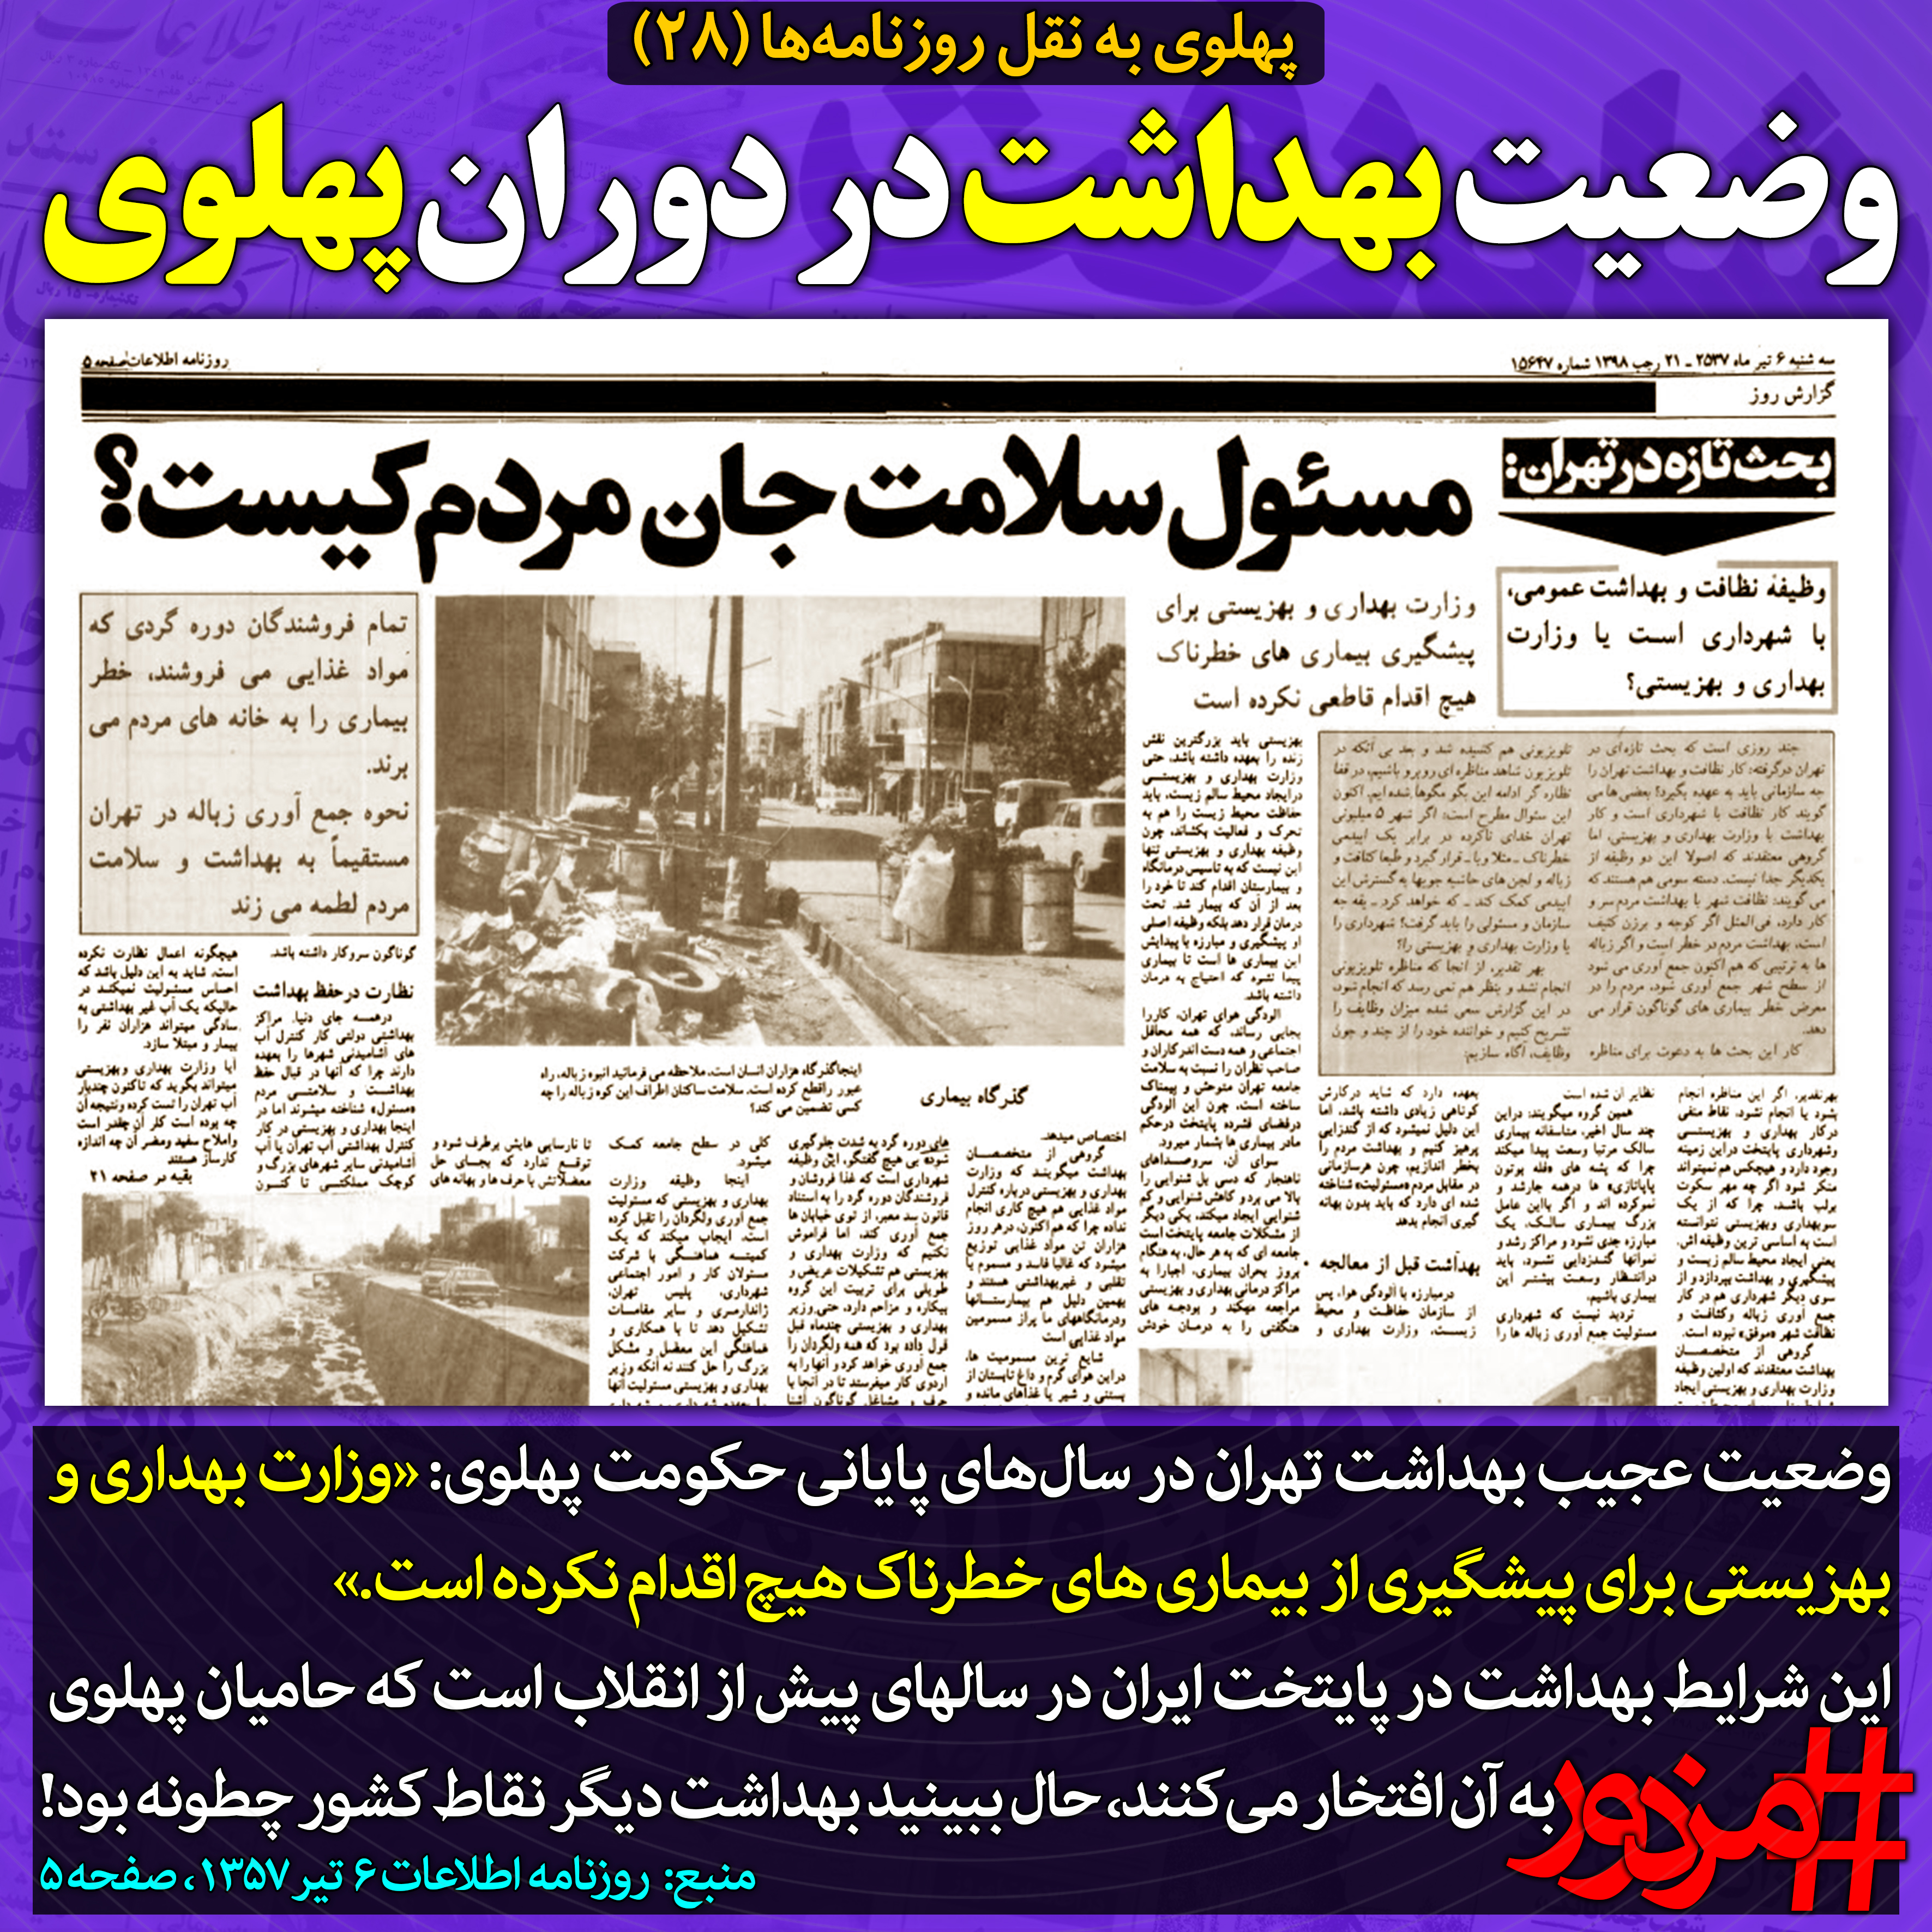 ۳۸۵۸ - پهلوی به نقل روزنامه ها (۲۸): وضعیت بهداشت در دوران پهلوی